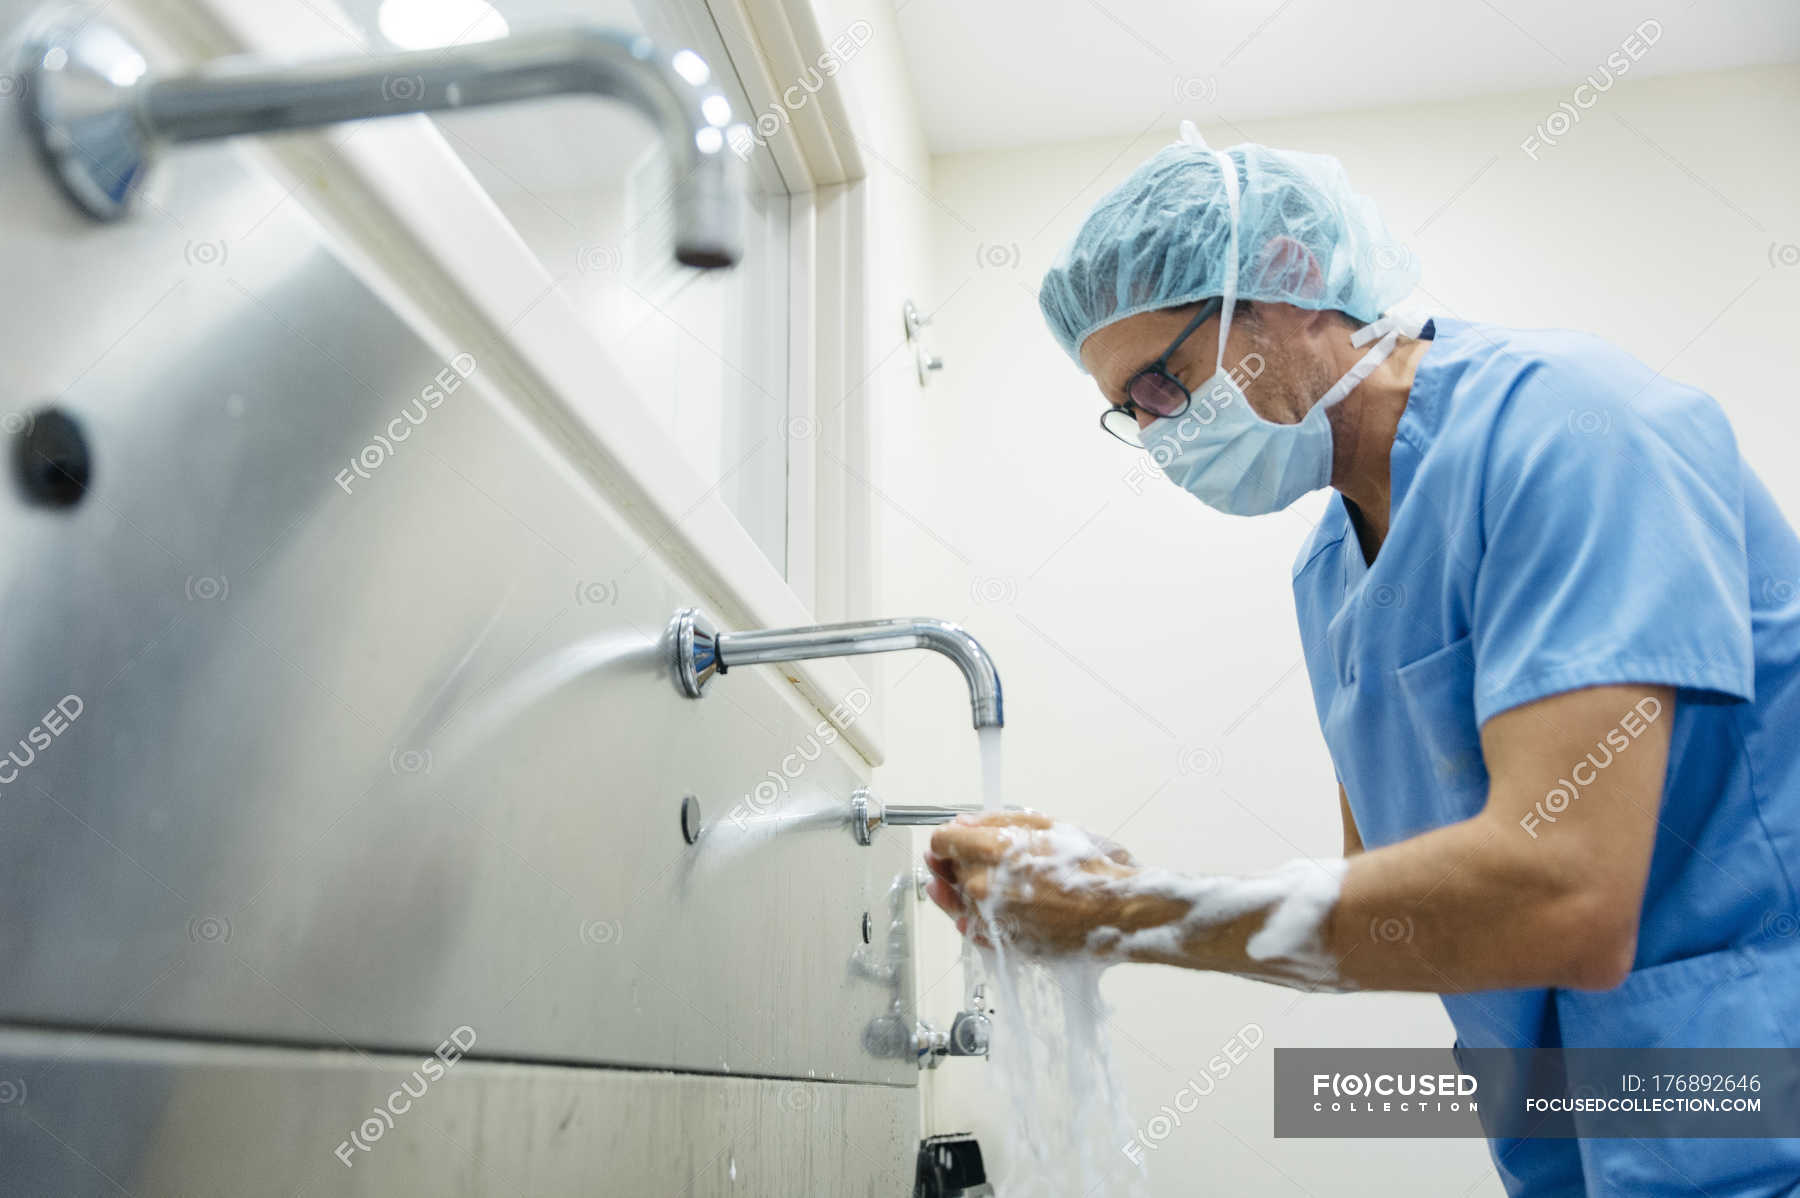 Побрить перед операцией. Мытье рук хирурга перед операцией. Подготовка рук хирурга к операции. Хирургическая мойка рук. Хирург обрабатывает руки.